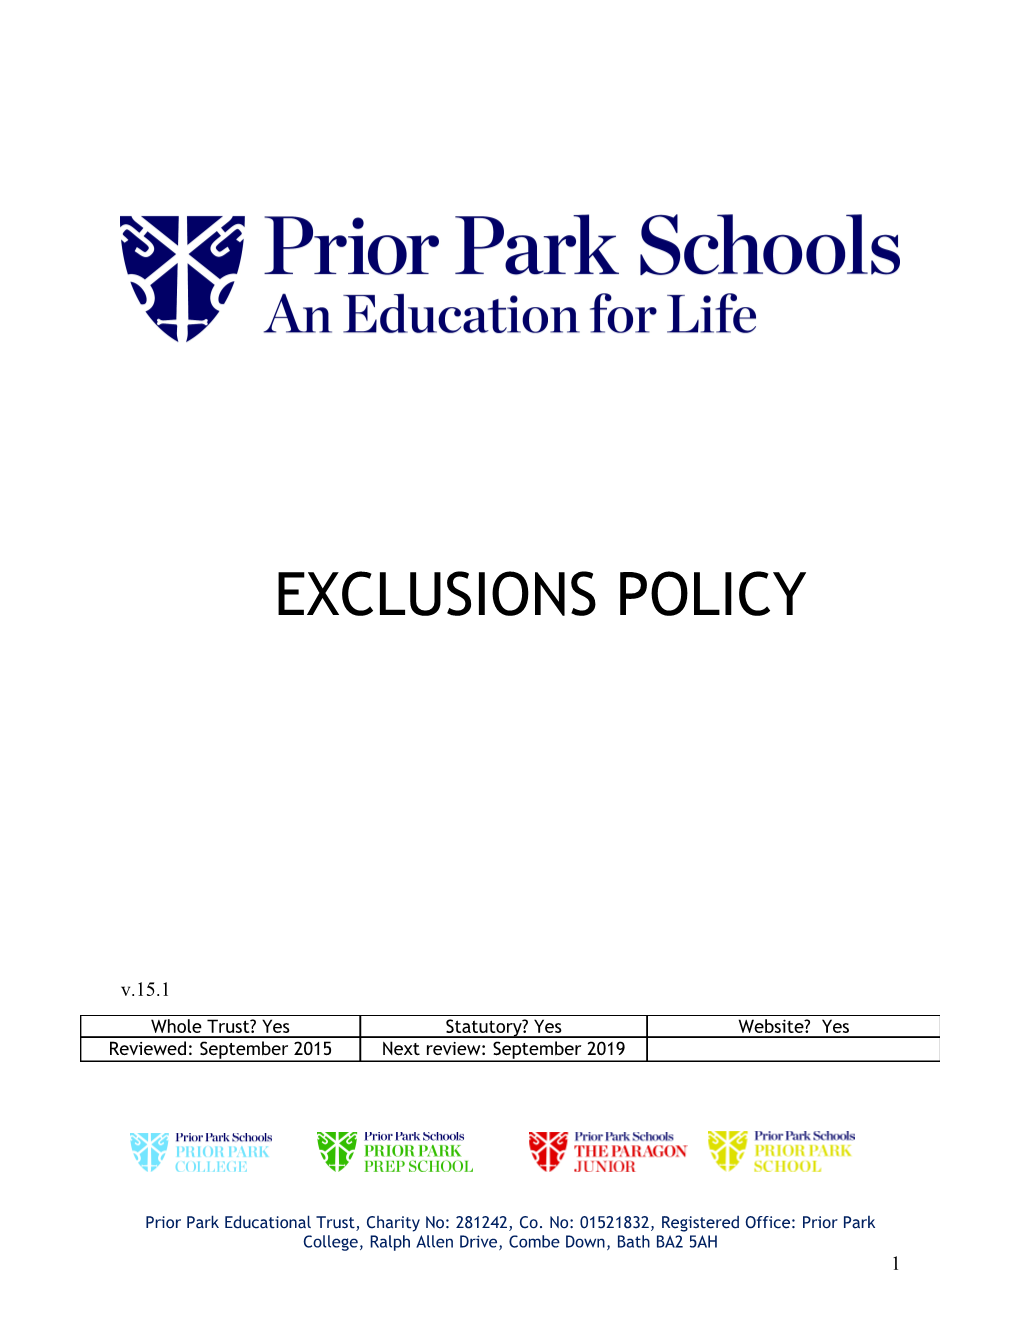 Prior Park Schools Exclusion Policy